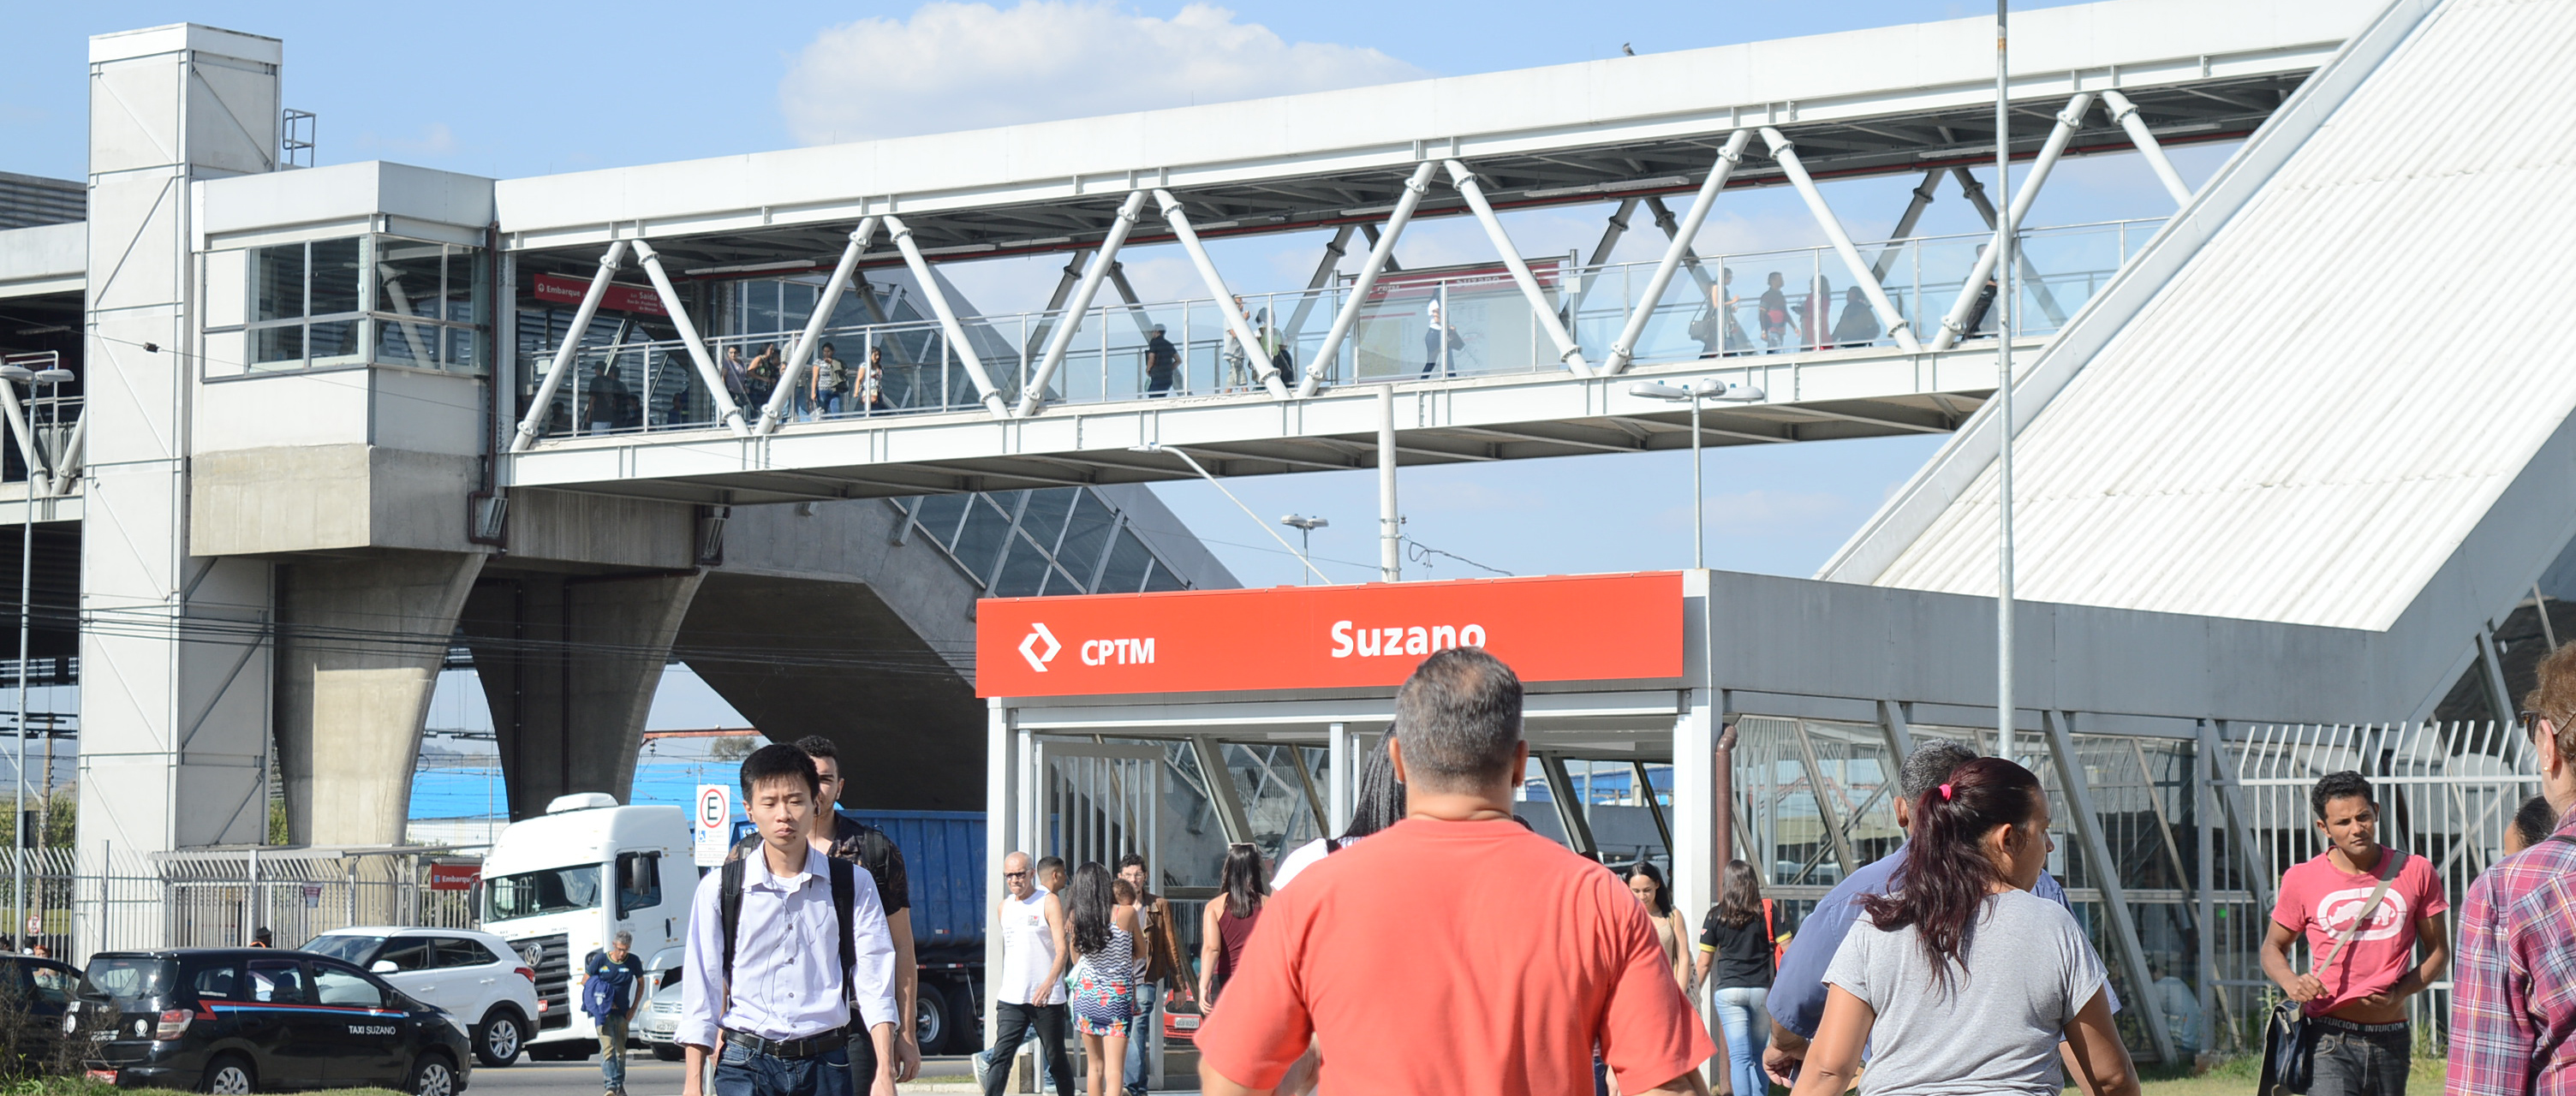 Área disponível na estação Brás (Jean Carlos) - Metrô CPTM